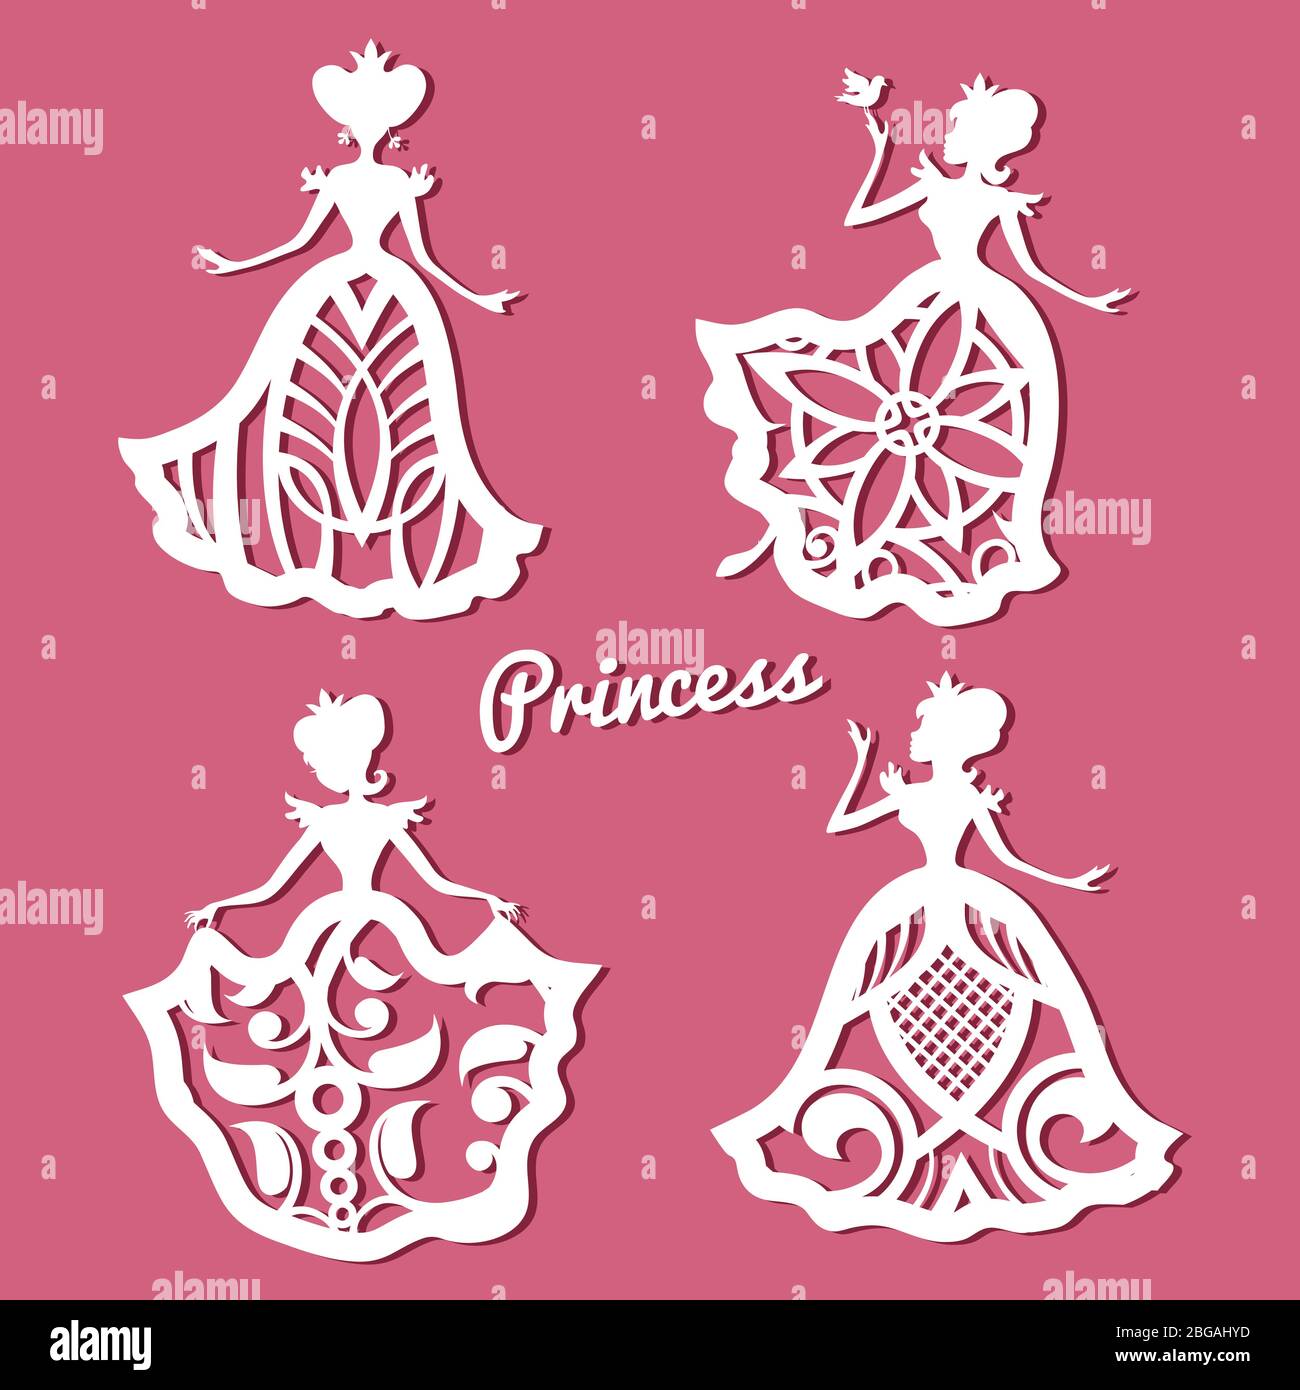 Romantische Prinzessin in Spitzen Brautkleider mit geschnitztem Muster. Spitze Prinzessin Figur Rahmen, Vektor-Illustration Stock Vektor